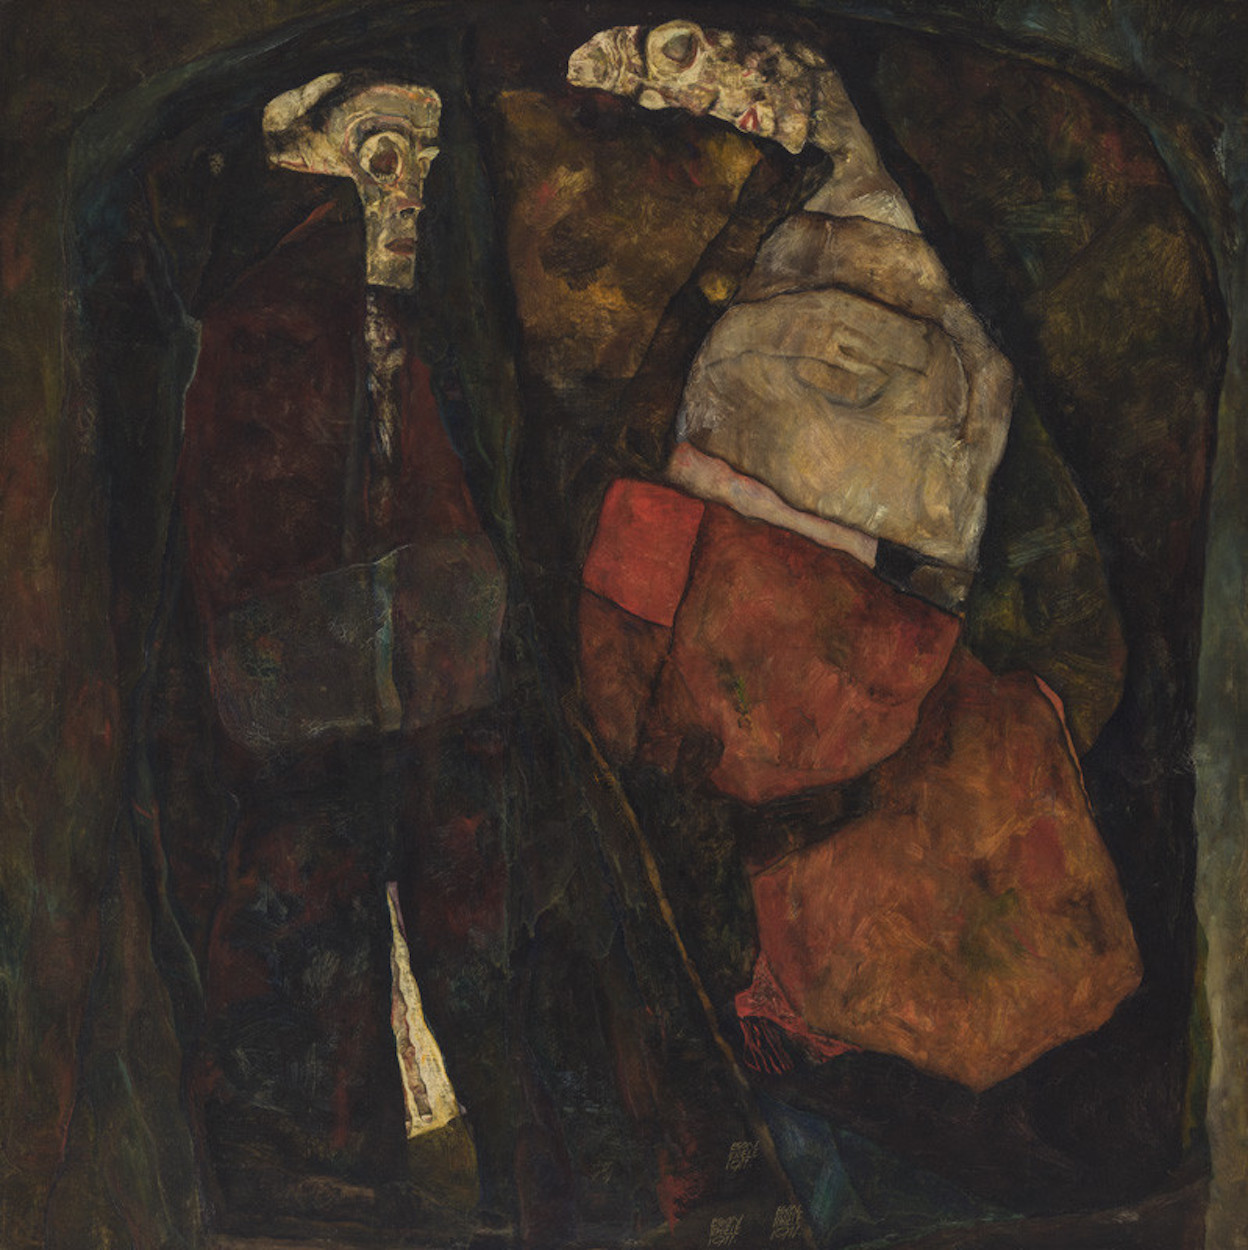 Femme enceinte et la mort  by Egon Schiele - 1911 - 100 x 100 cm 